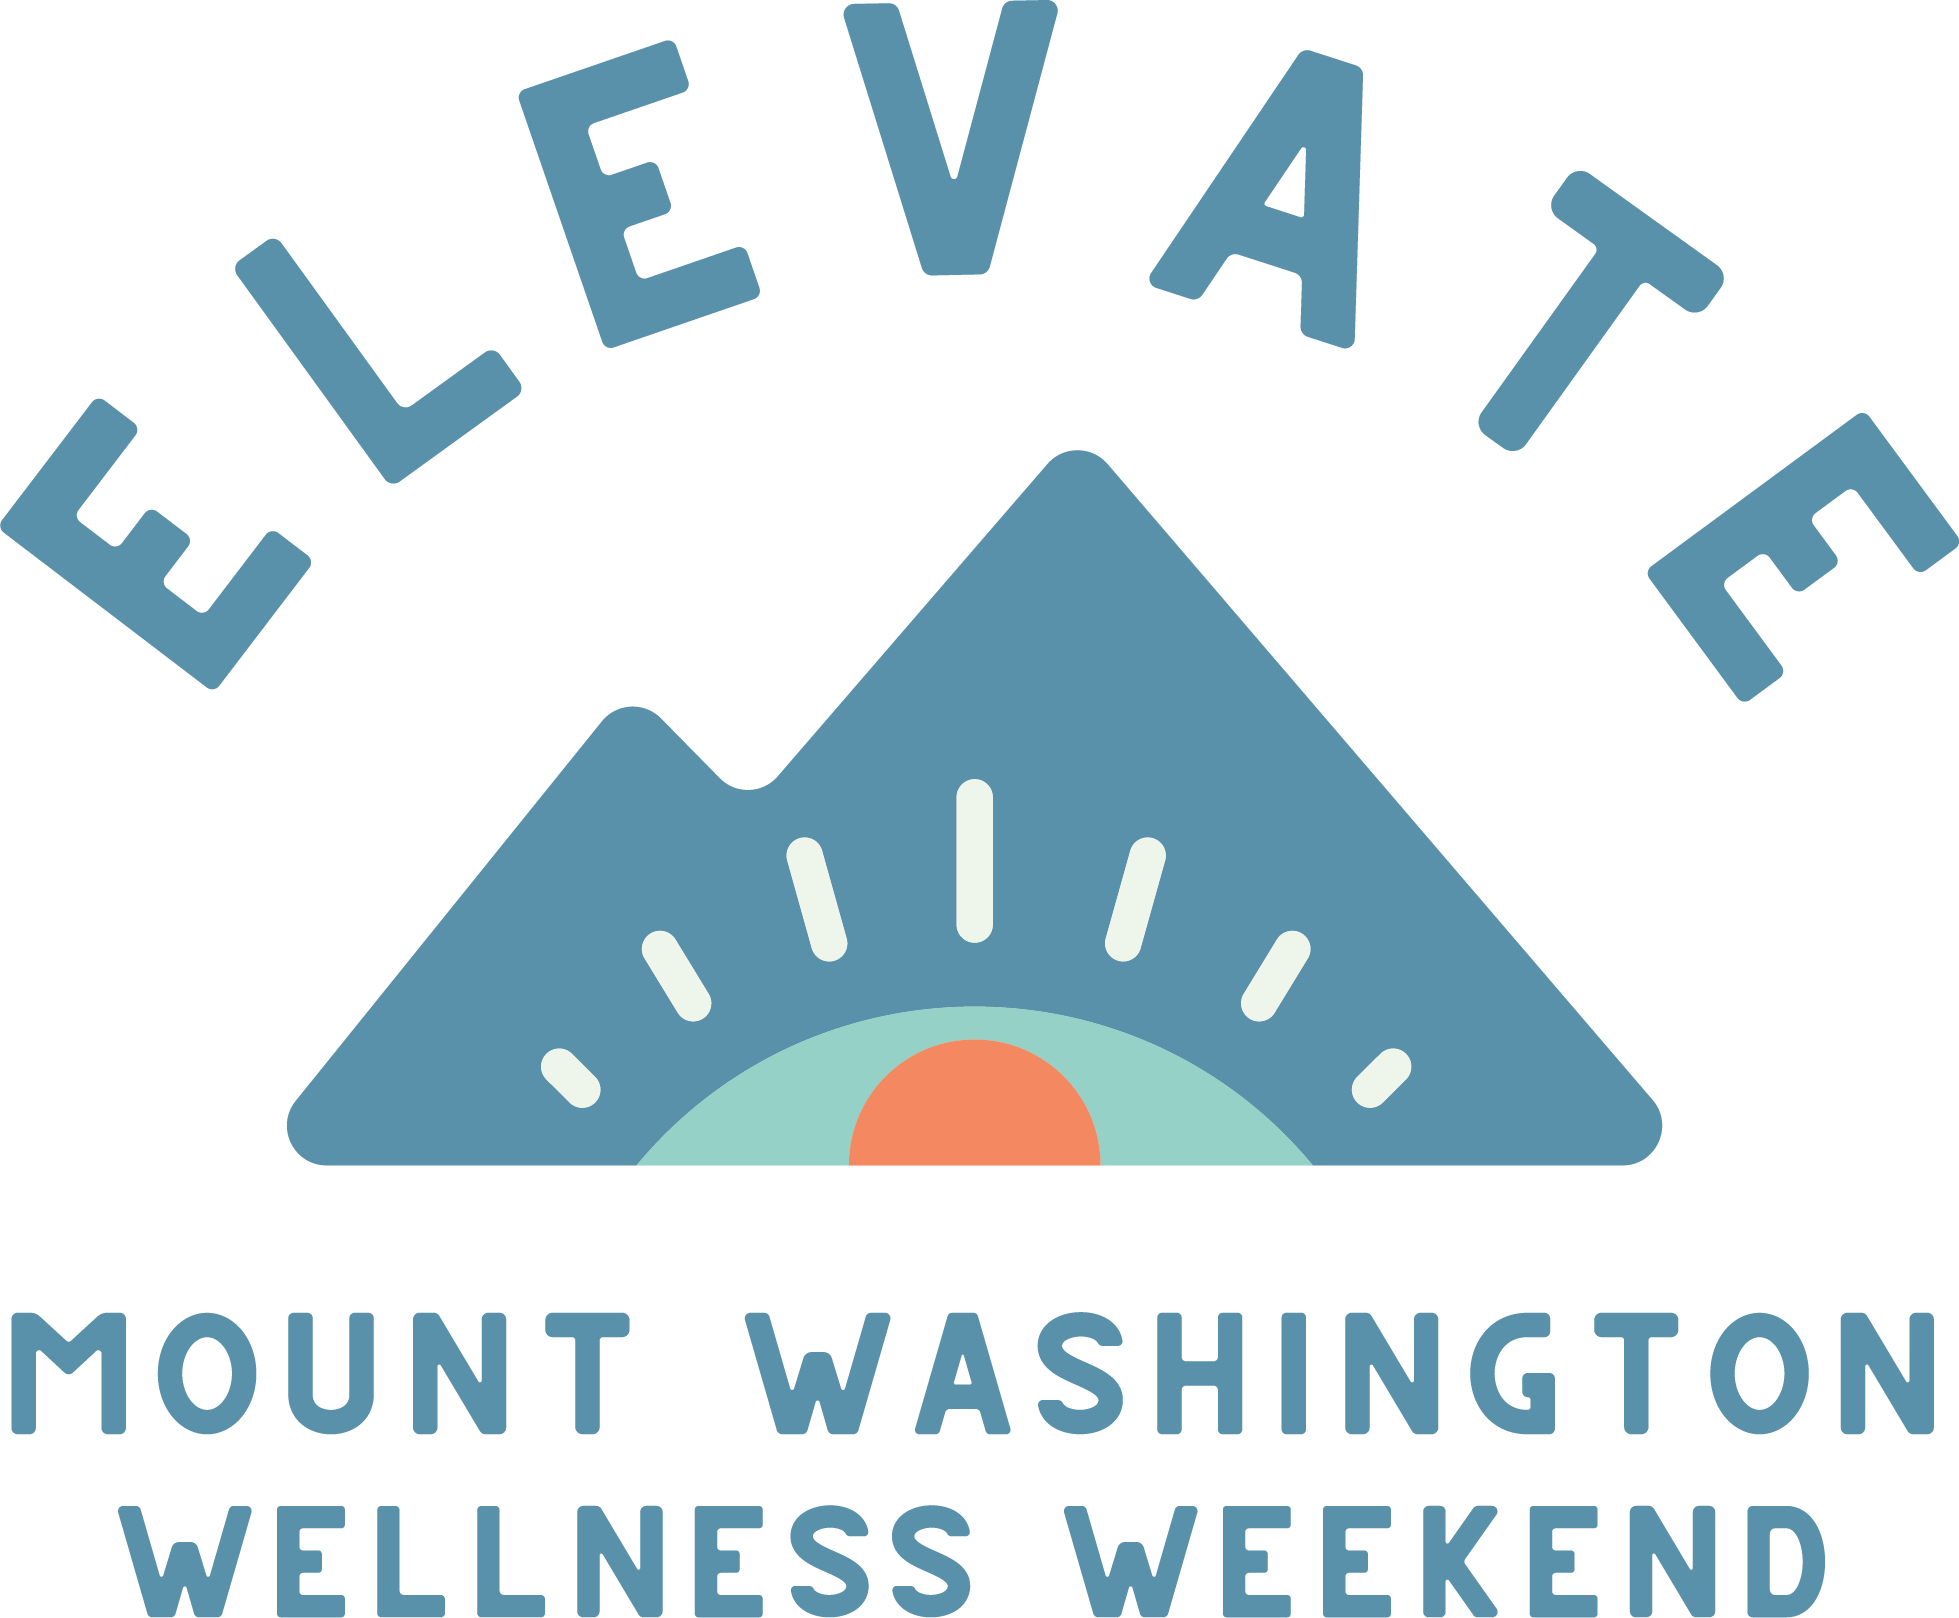 Elevate Wellness Weekend